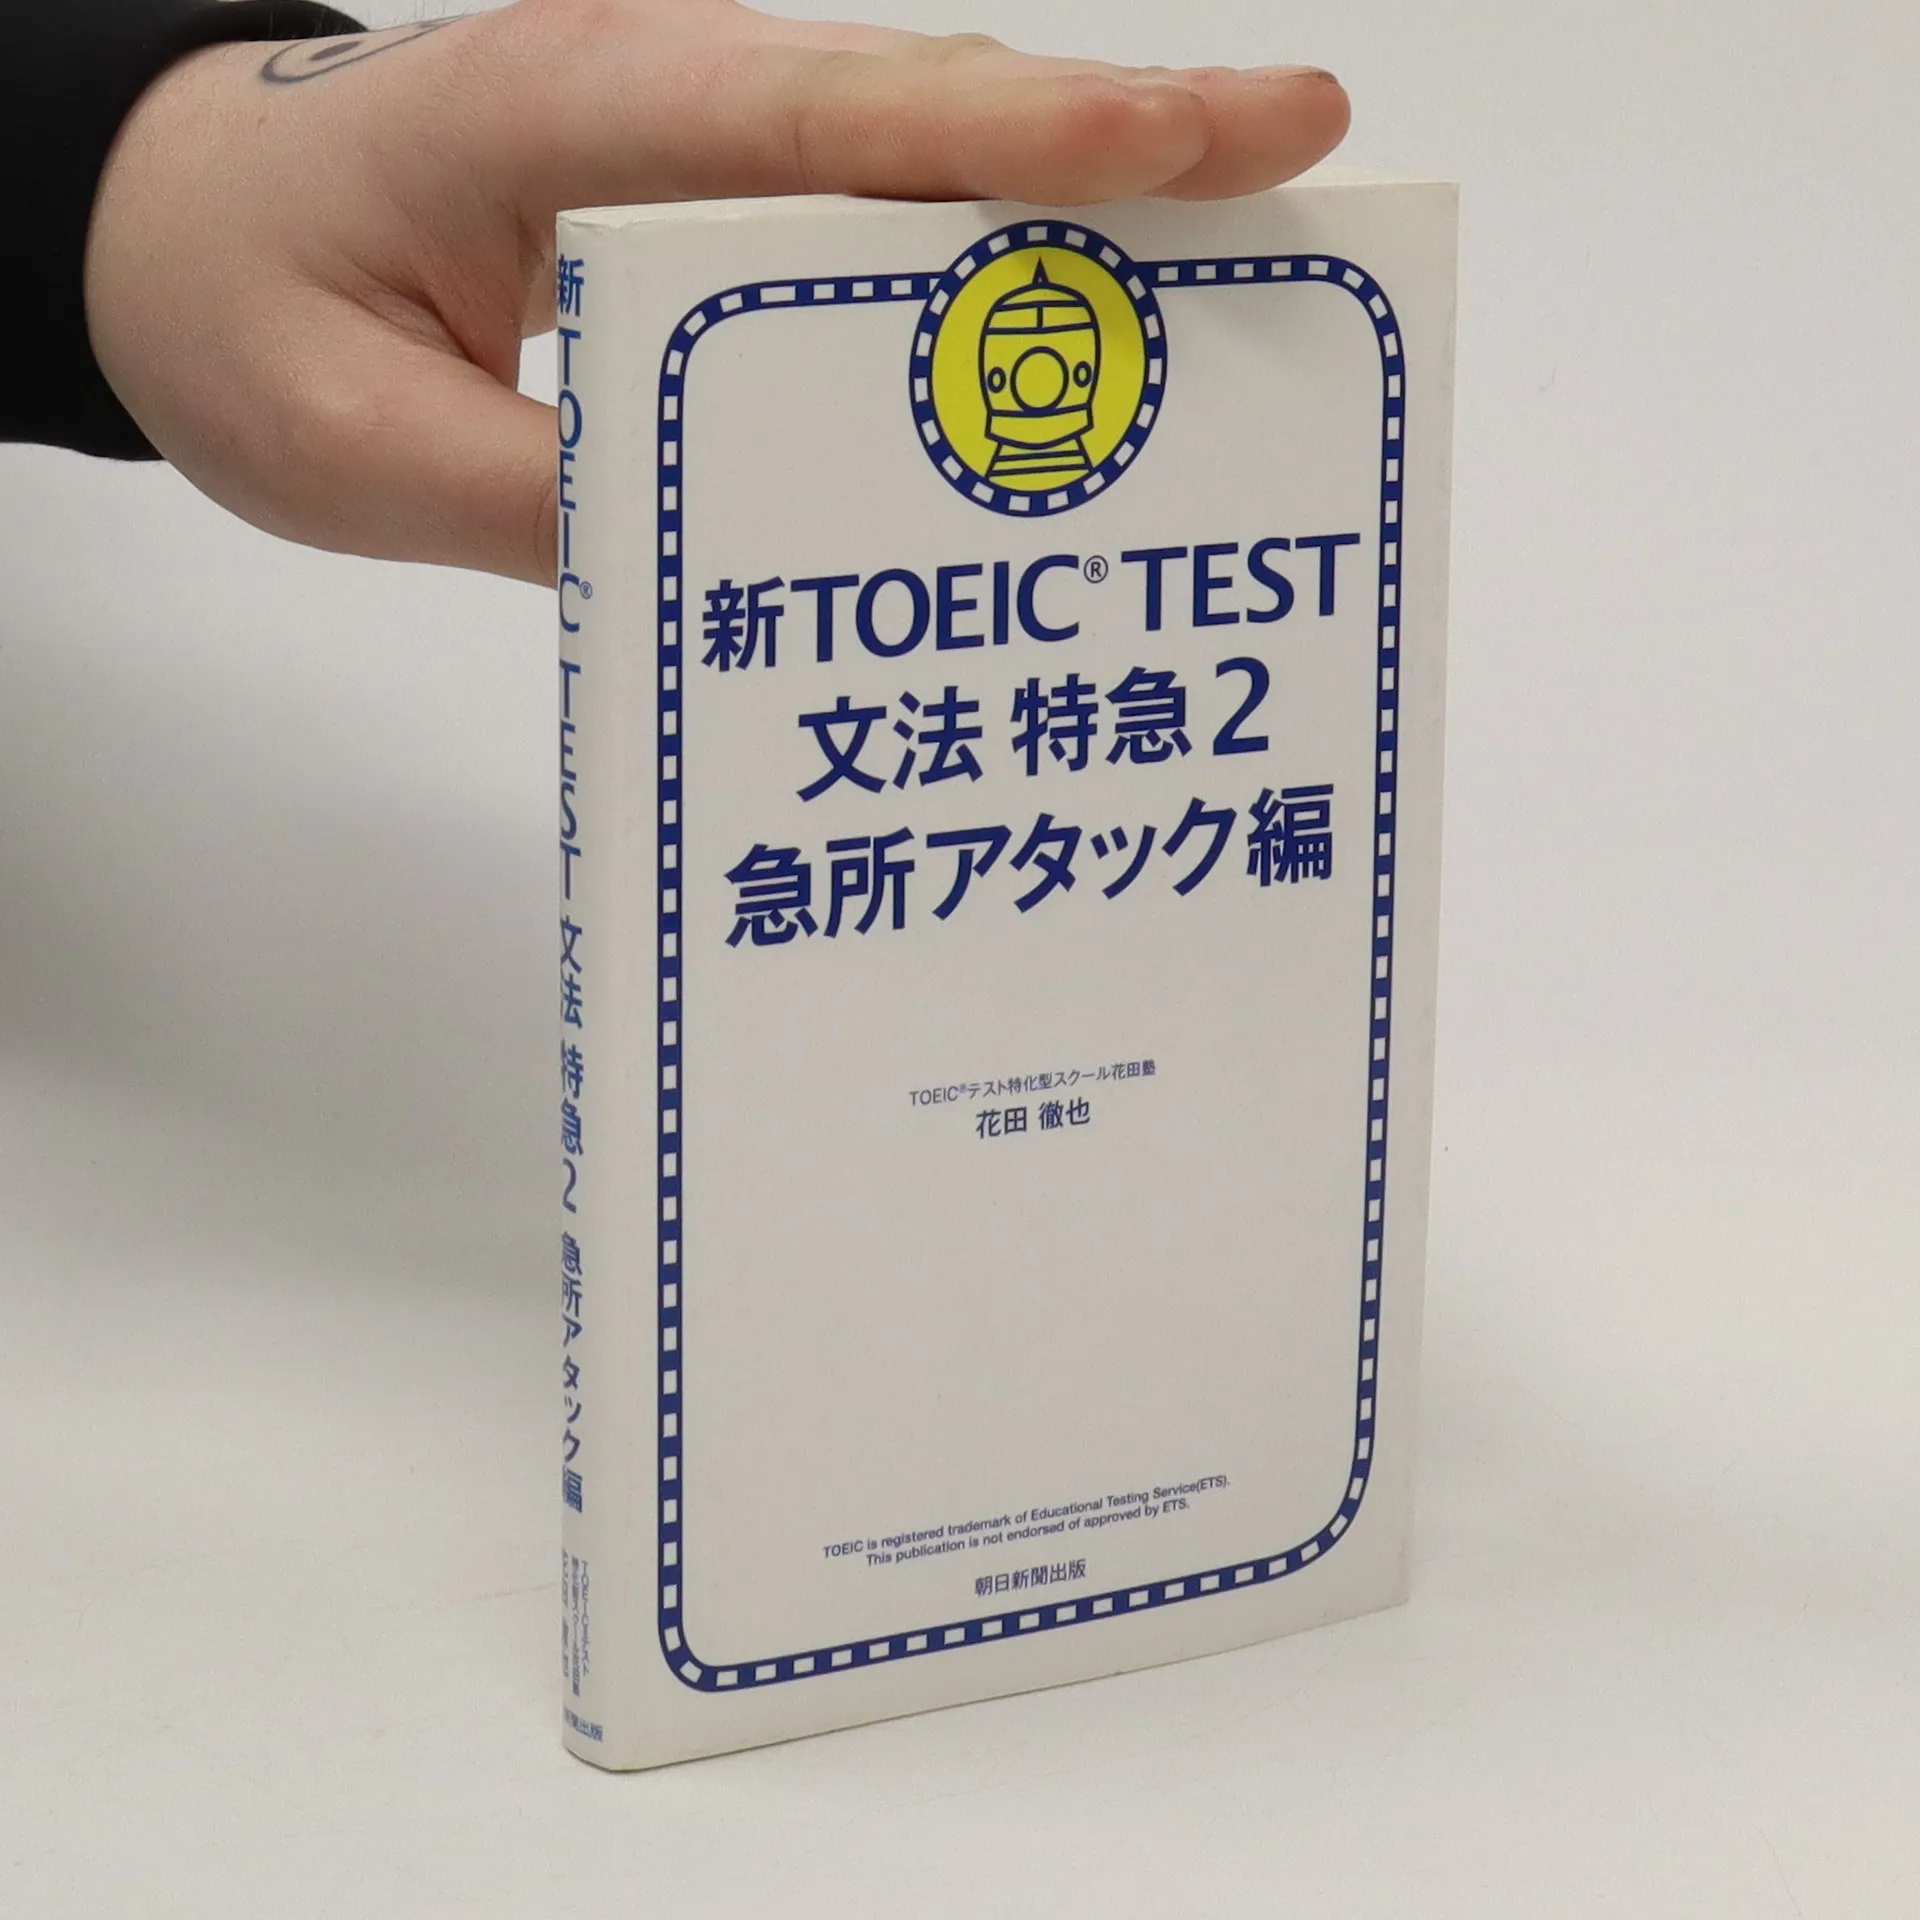 新TOEIC TEST文法特急 2(急所アタック編) 今ダケ送料無料 - 語学・辞書 